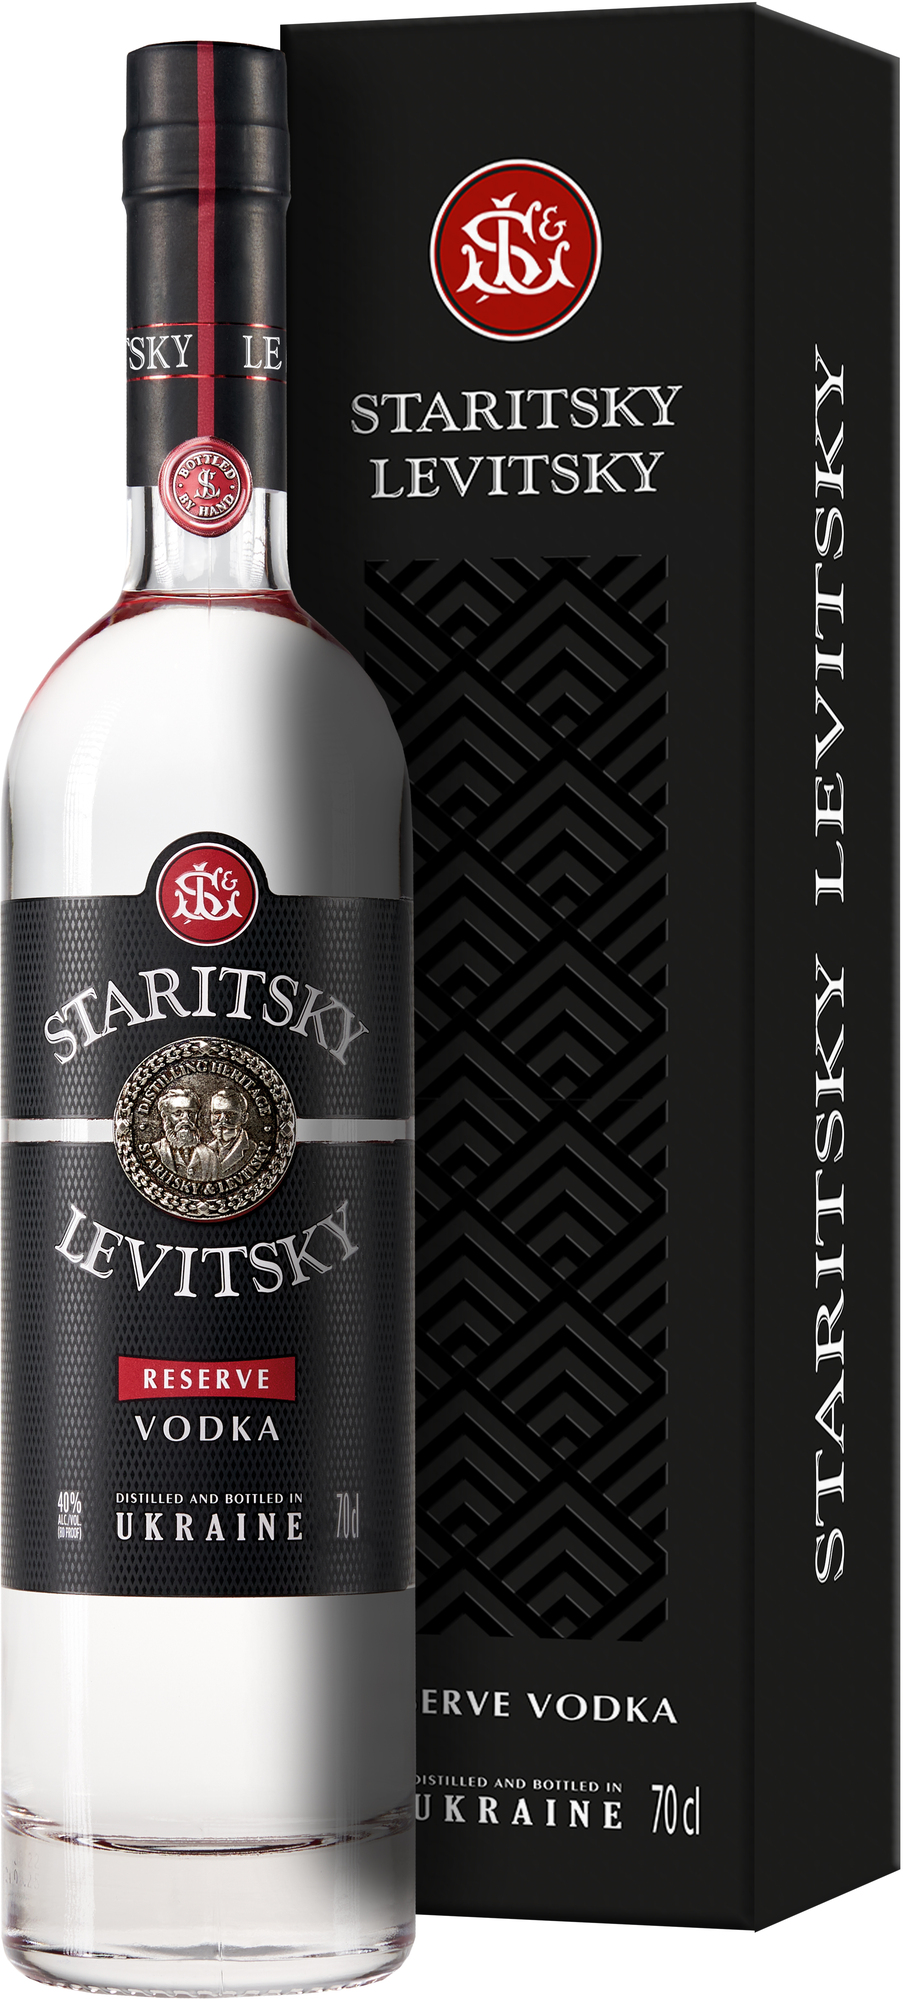 Staritsky Levitsky Reserve Vodka 40% 0,7l